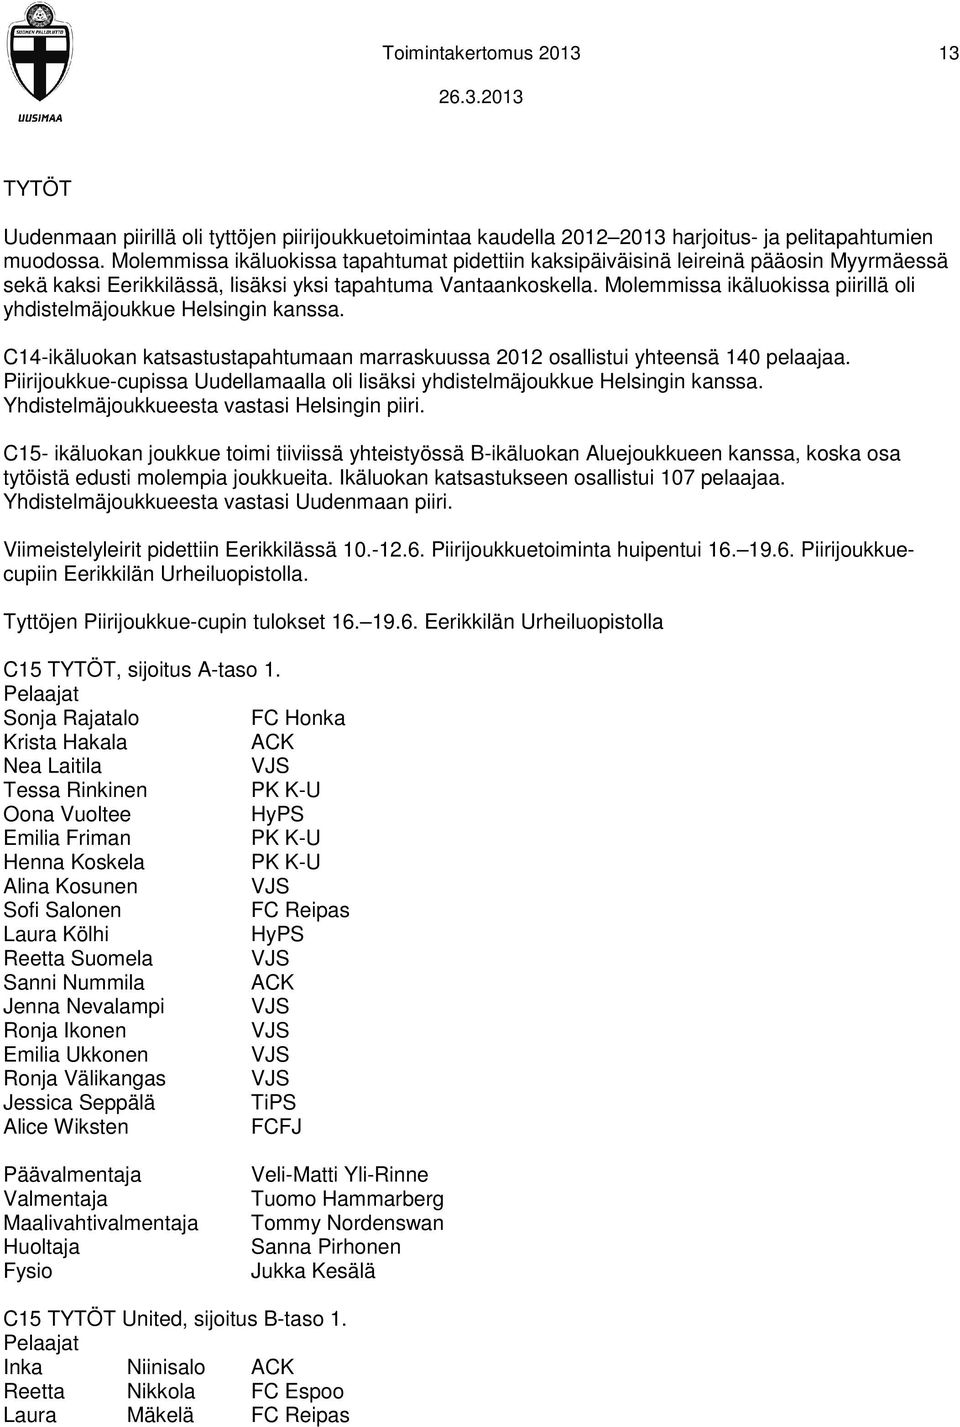 Molemmissa ikäluokissa piirillä oli yhdistelmäjoukkue Helsingin kanssa. C14-ikäluokan katsastustapahtumaan marraskuussa 2012 osallistui yhteensä 140 pelaajaa.